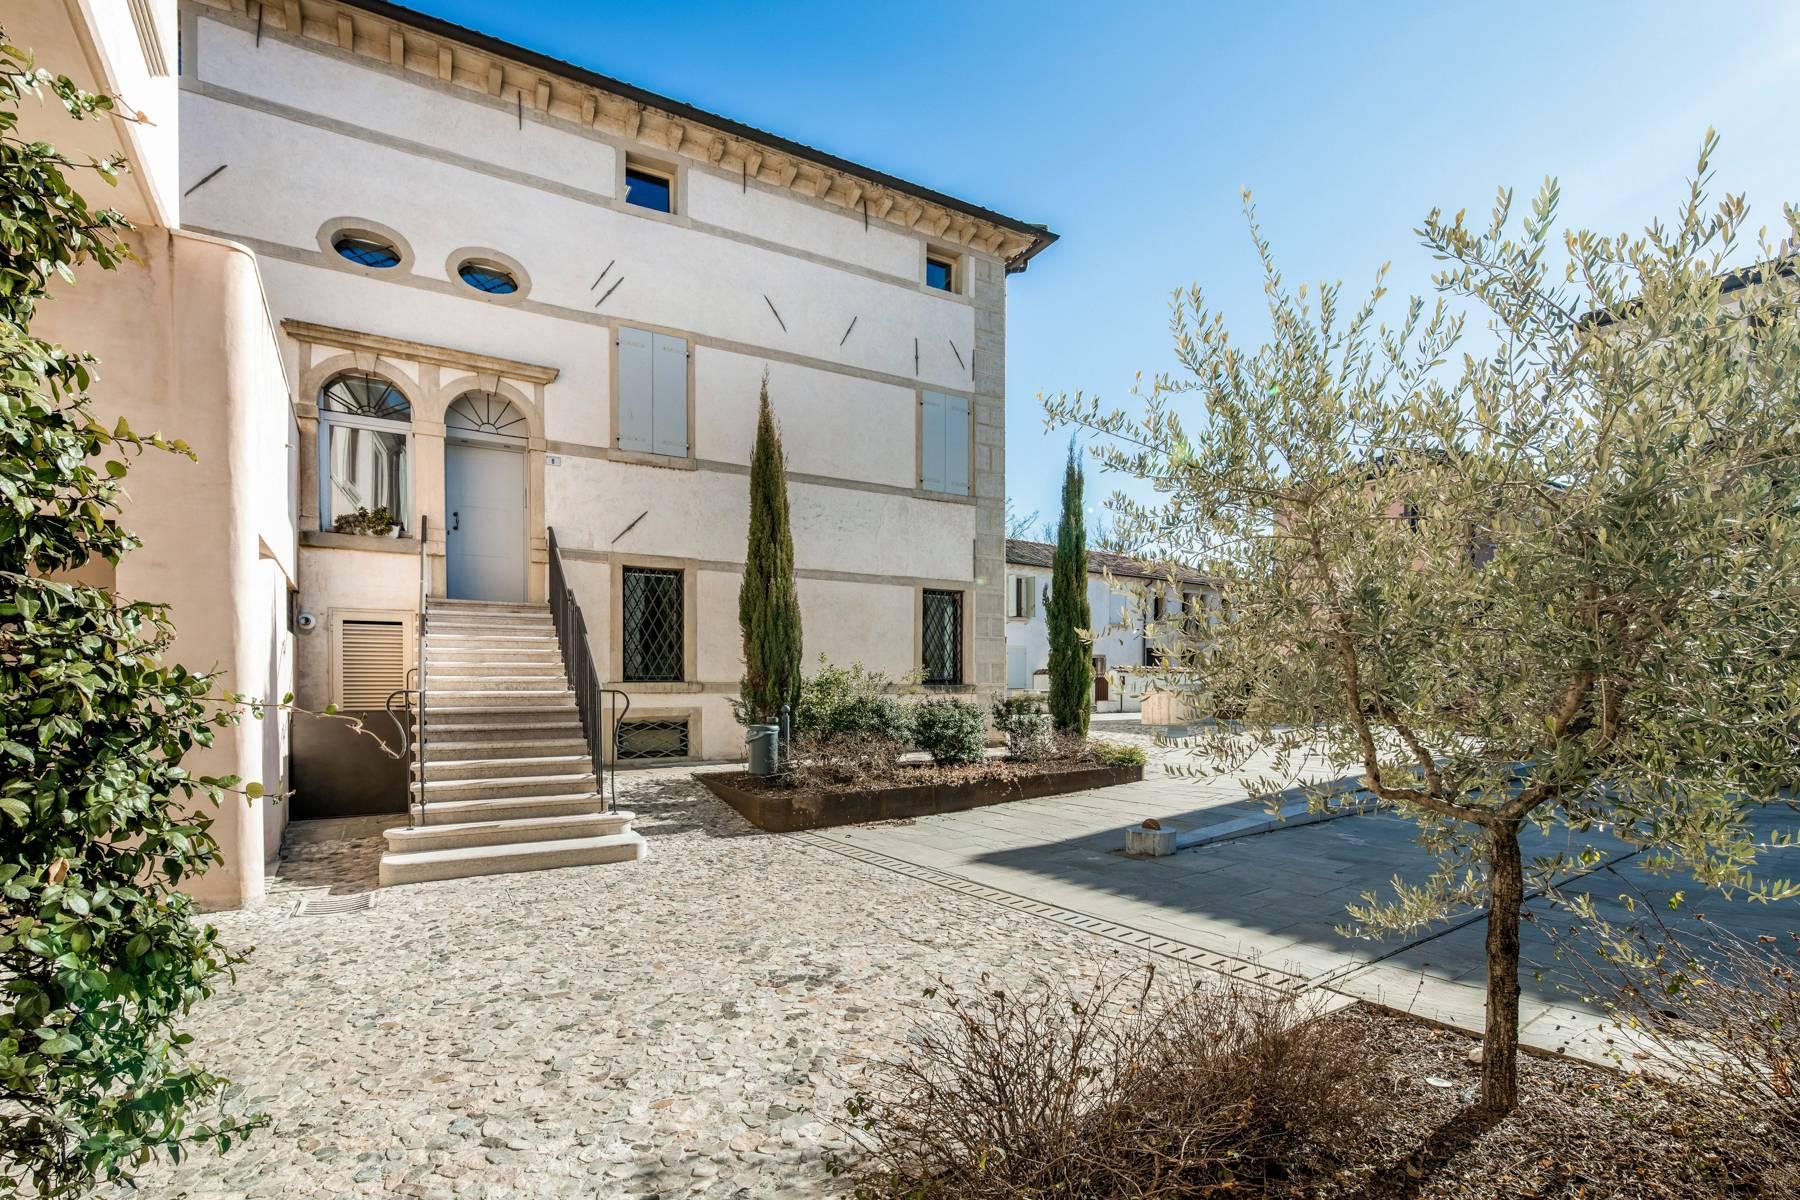 Penthouse de luxe dans une villa vénitienne du 17ème siècle entièrement rénovée - 18